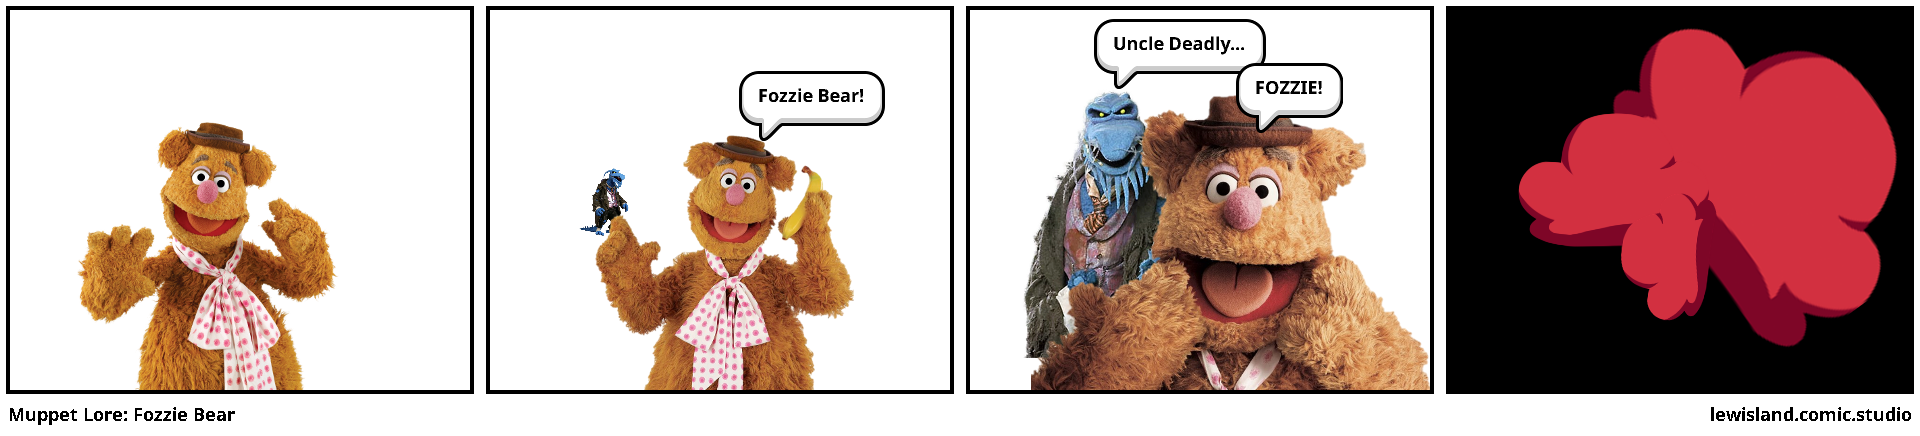 Muppet Lore: Fozzie Bear